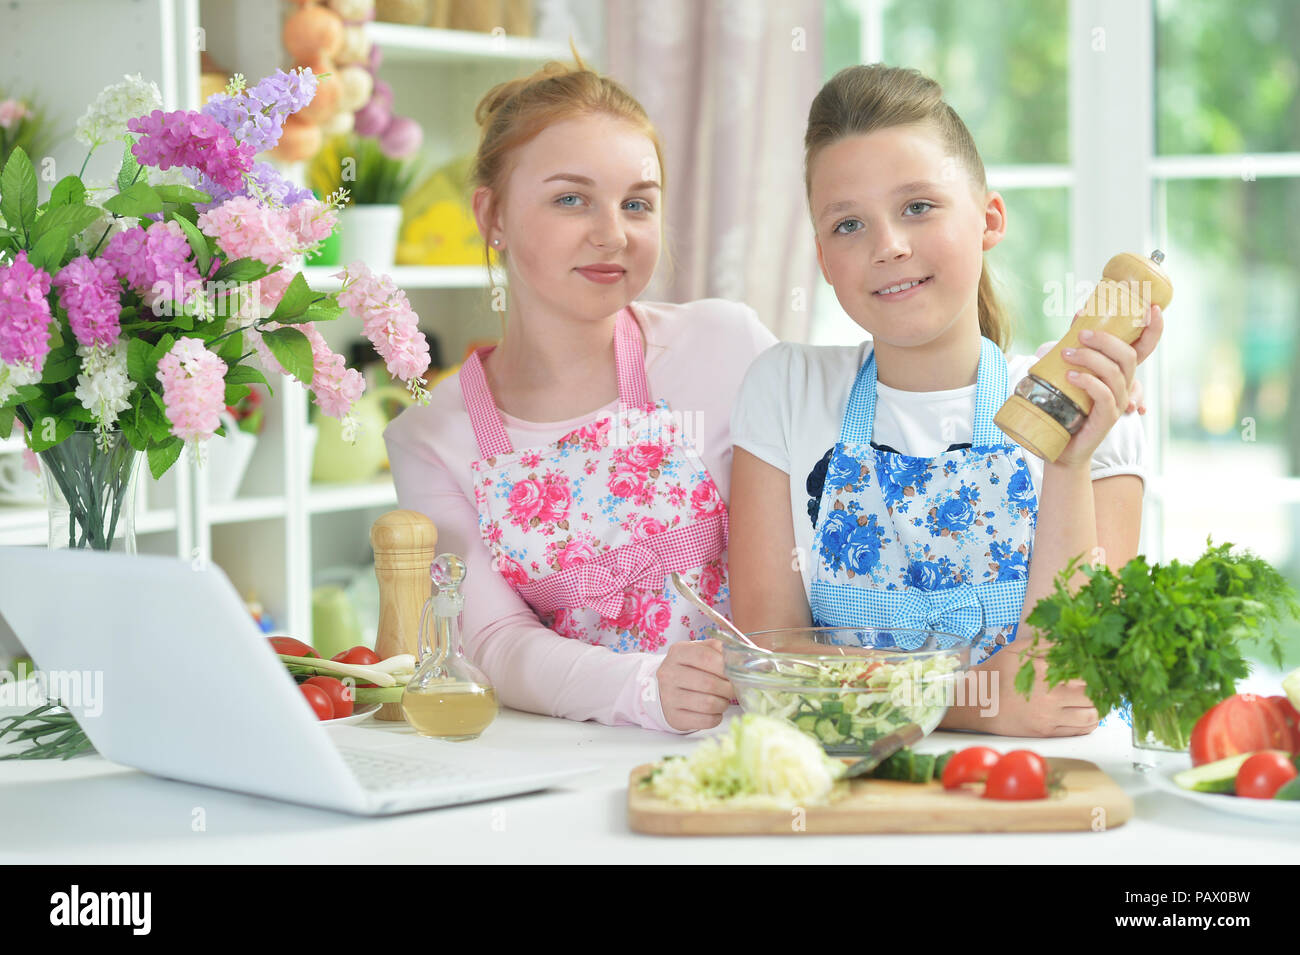 Deux funny girls préparer une salade fraîche Banque D'Images